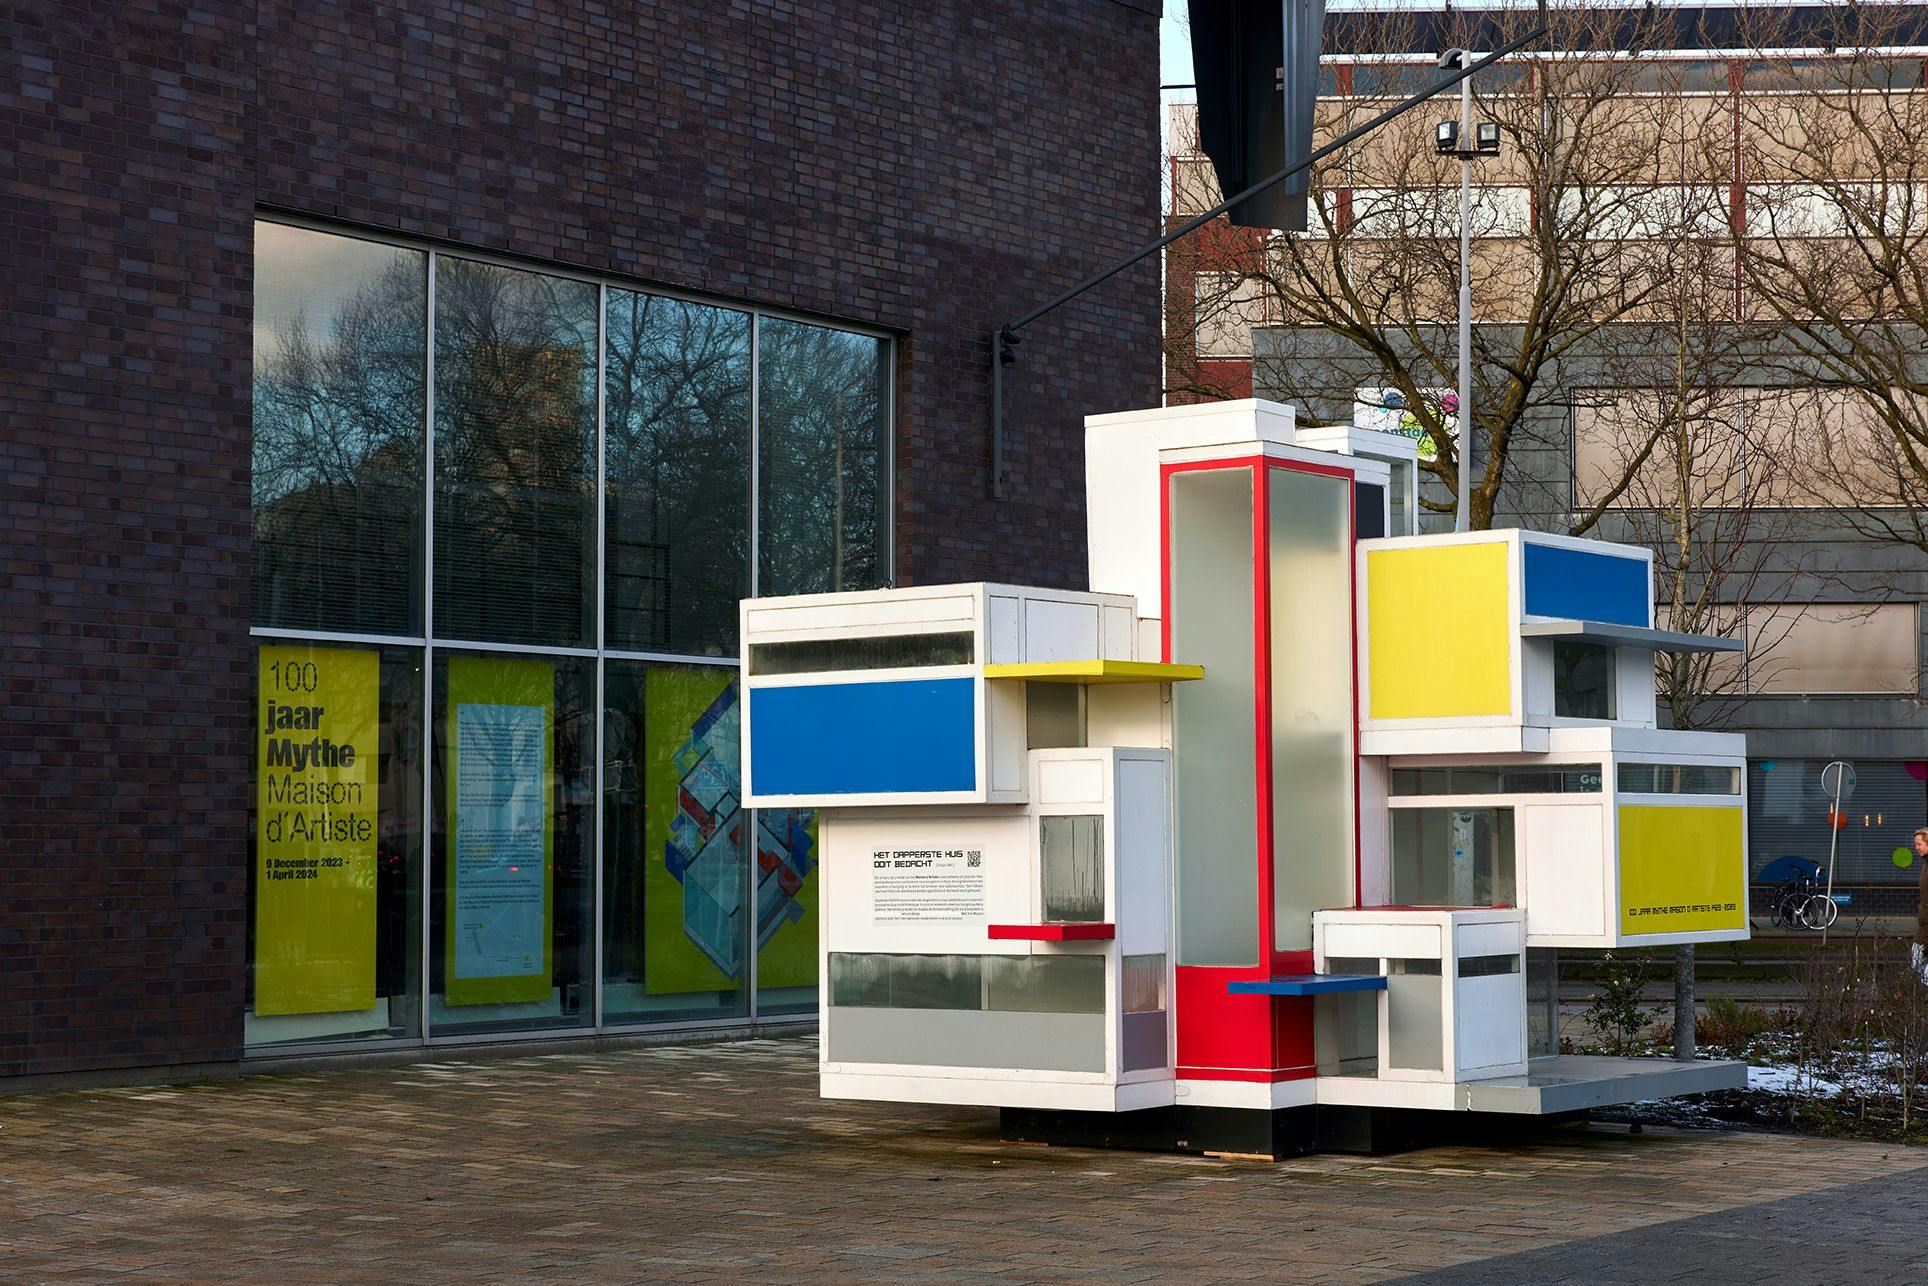 Prototype Maison d'Artiste aan het begin van de Jongkindstraat, tegenover Huis Sonneveld. Foto Aad Hoogendoorn.